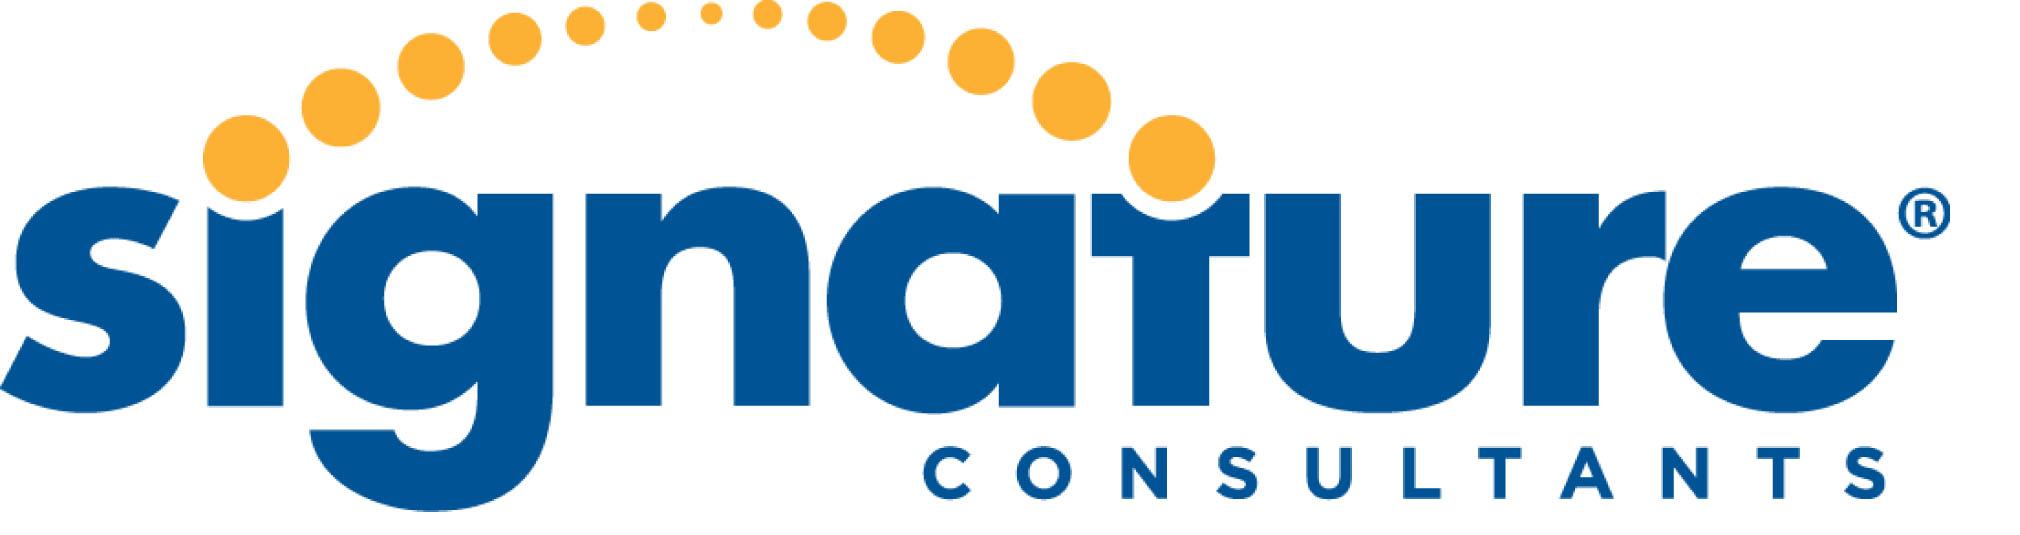 Signature-Consultants-Logo.jpg